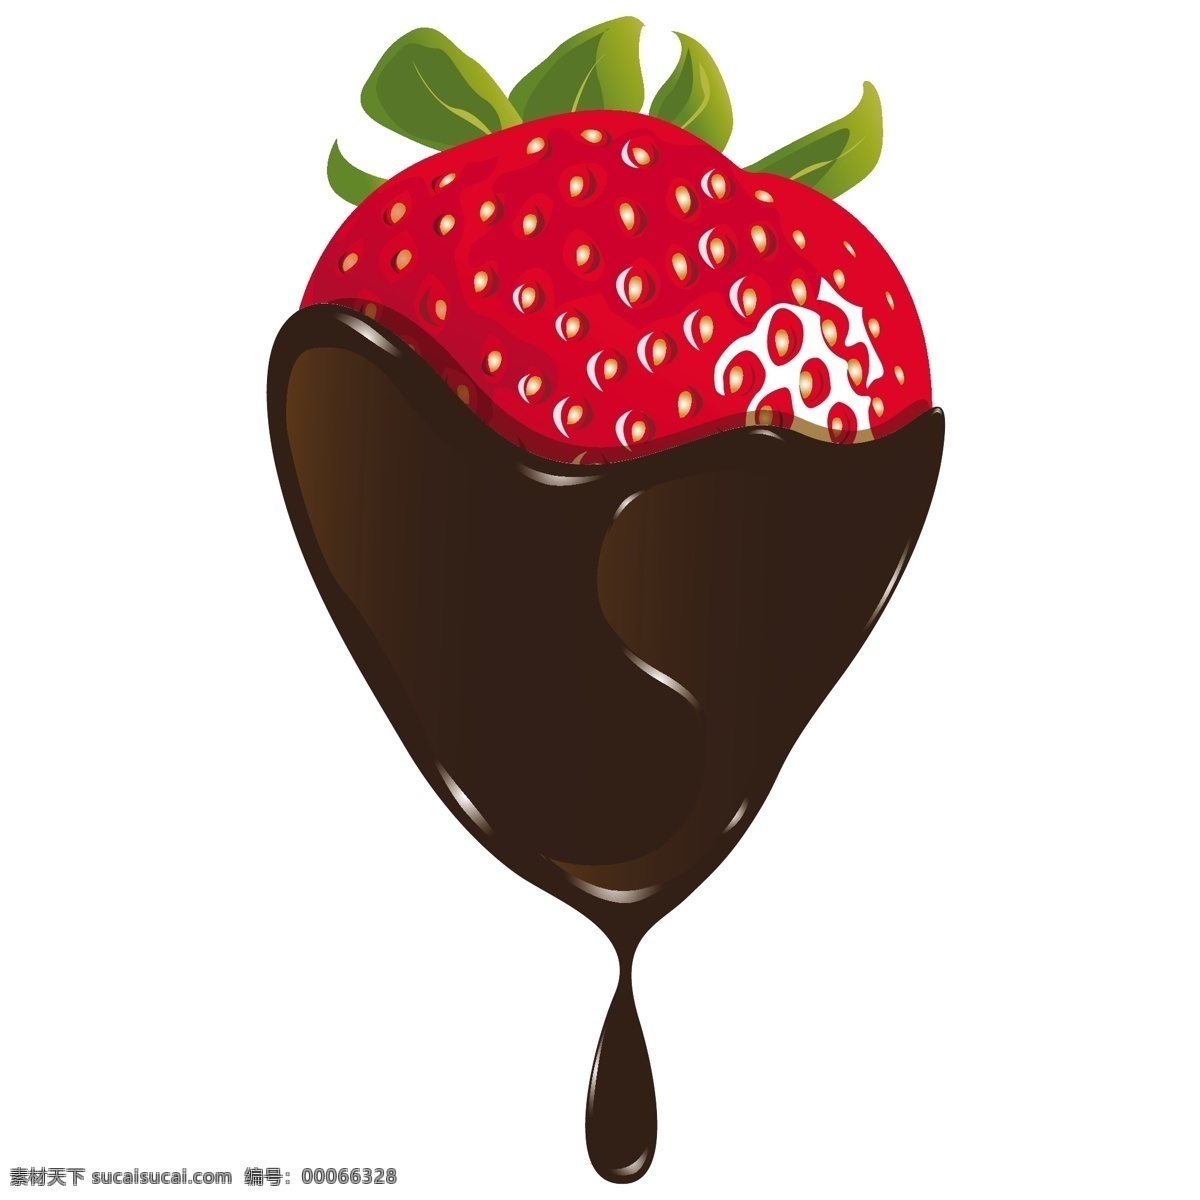 精美 草莓 巧克力 酱 矢量 果酱 红色 矢量素材 水果 饮食 甜草莓 矢量图 日常生活